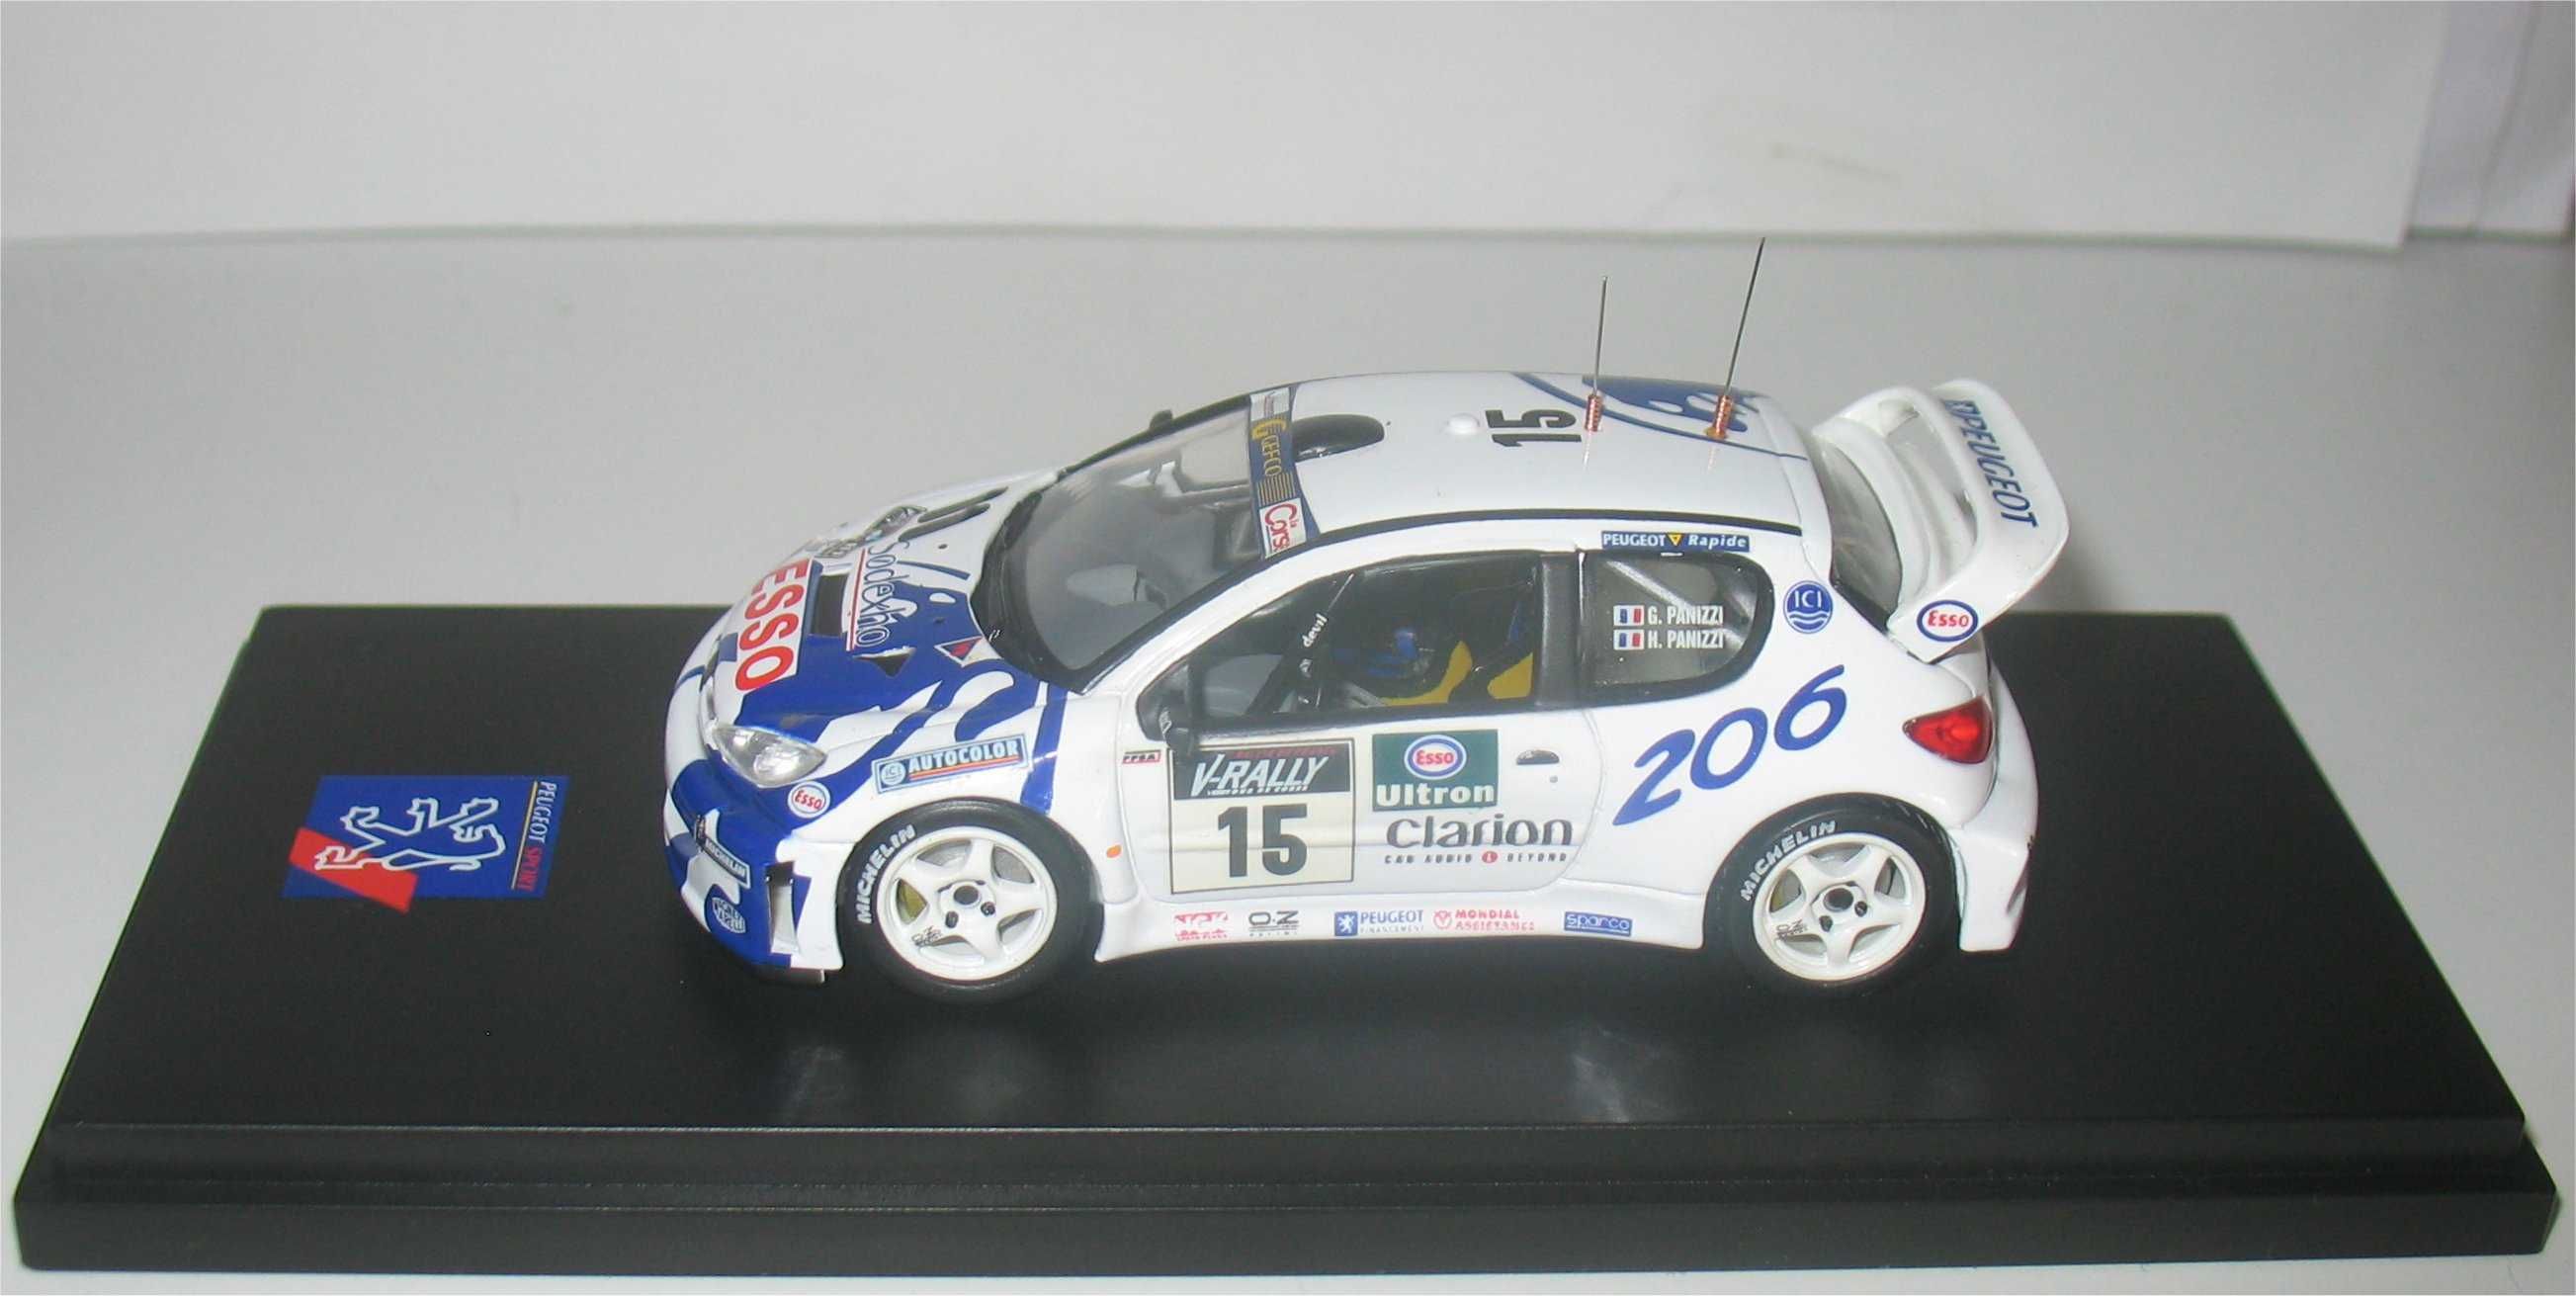 Skid - Peugeot 206 WRC - Tour de Corse 1999 - Gilles Panizzi